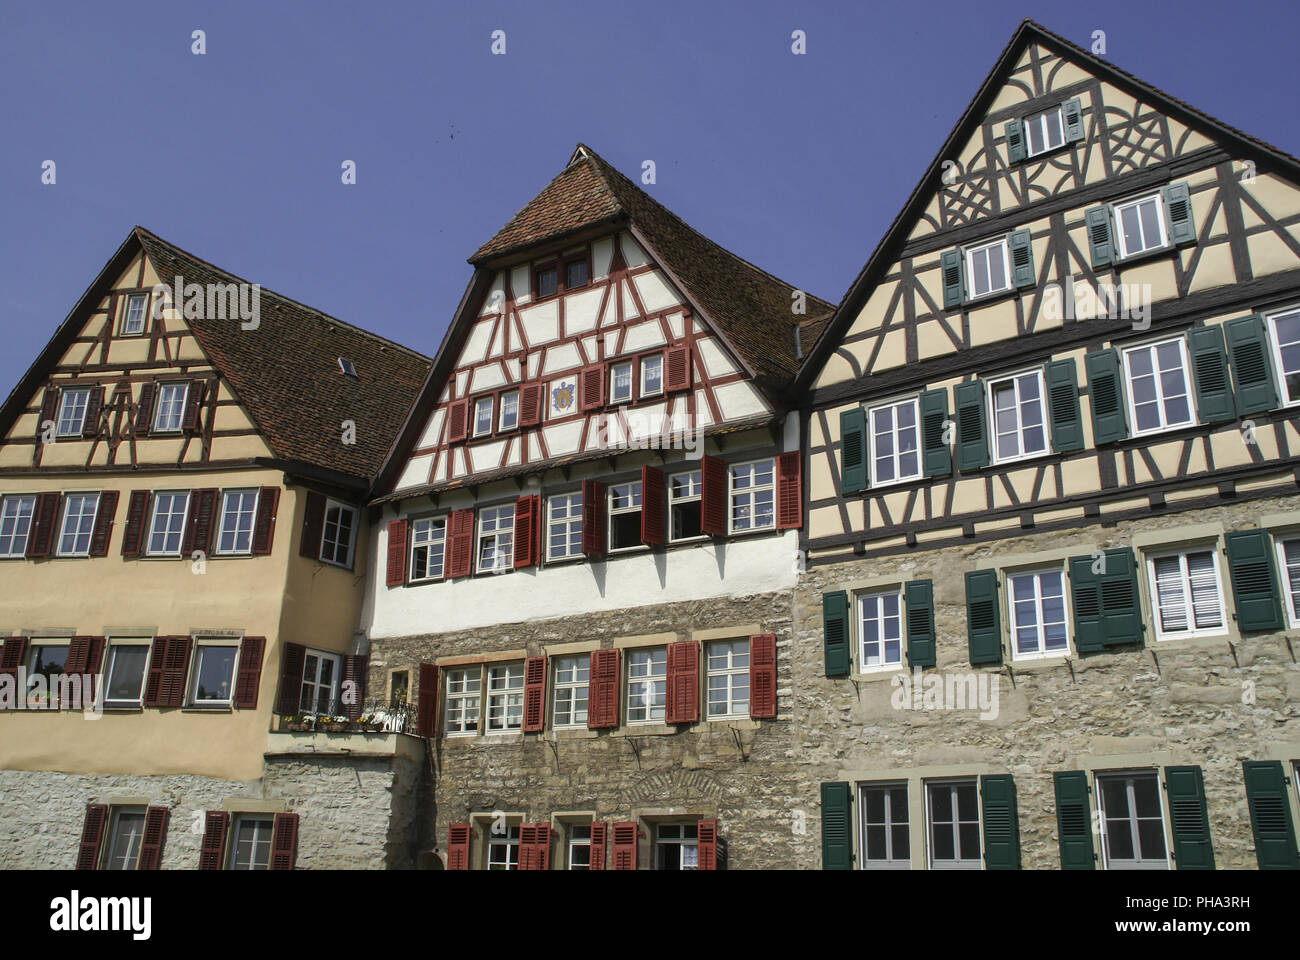 Half-Timbering Houses in Schwaebisch Hall, Germany Stock Photo